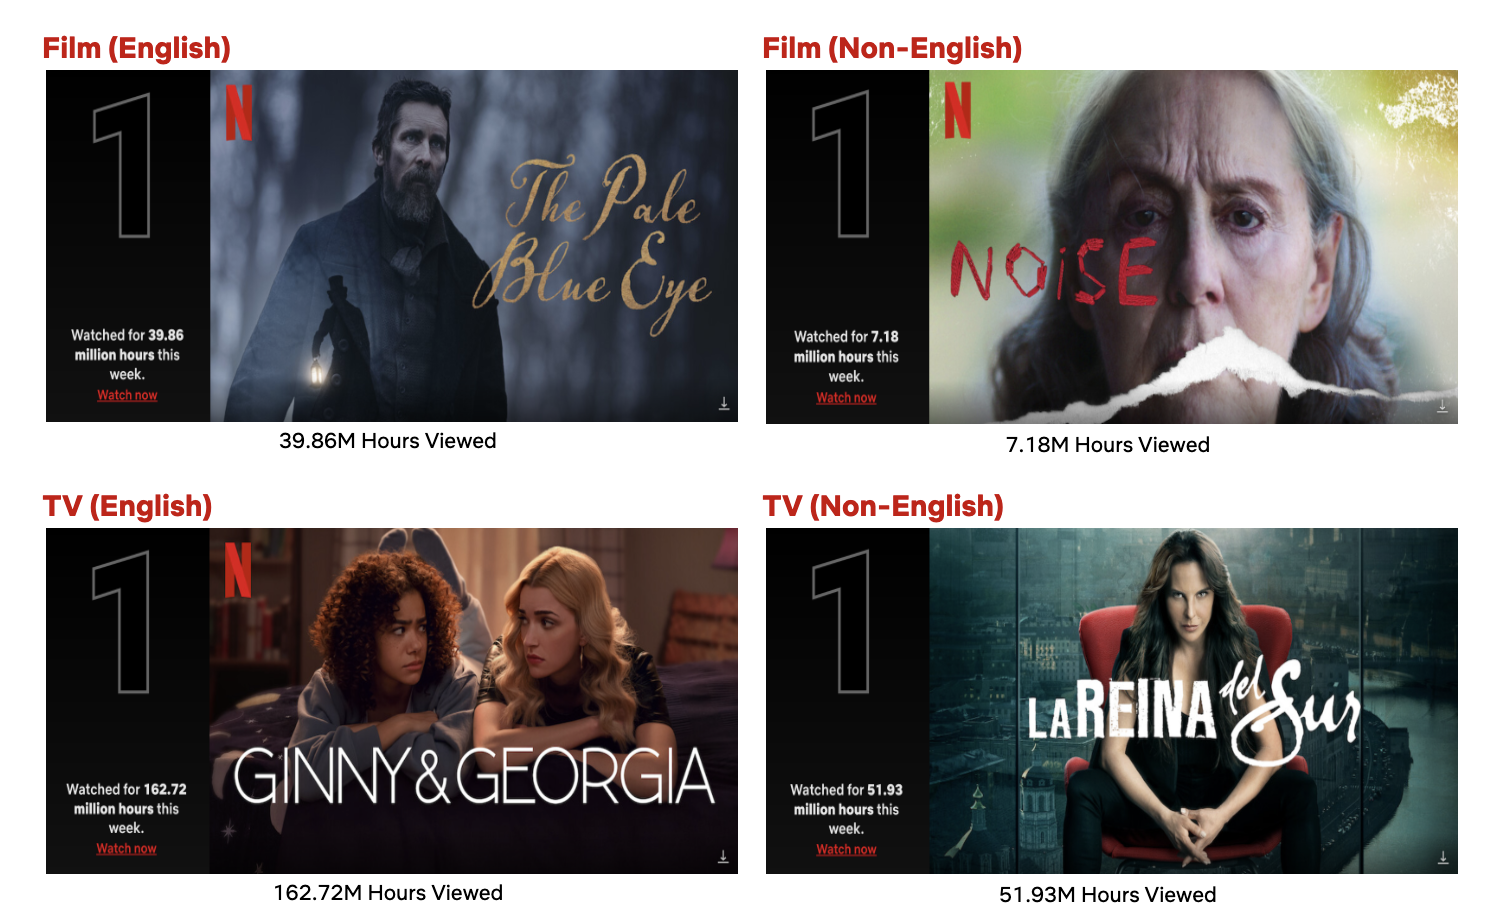 1月9日の週のTOP10:「ほの蒼き瞳」が映画の1位、「ナイブズ・アウト: グラス・オニオン」歴代TOP10を上昇中、「ジニー&ジョージア」TV番組1位を固守